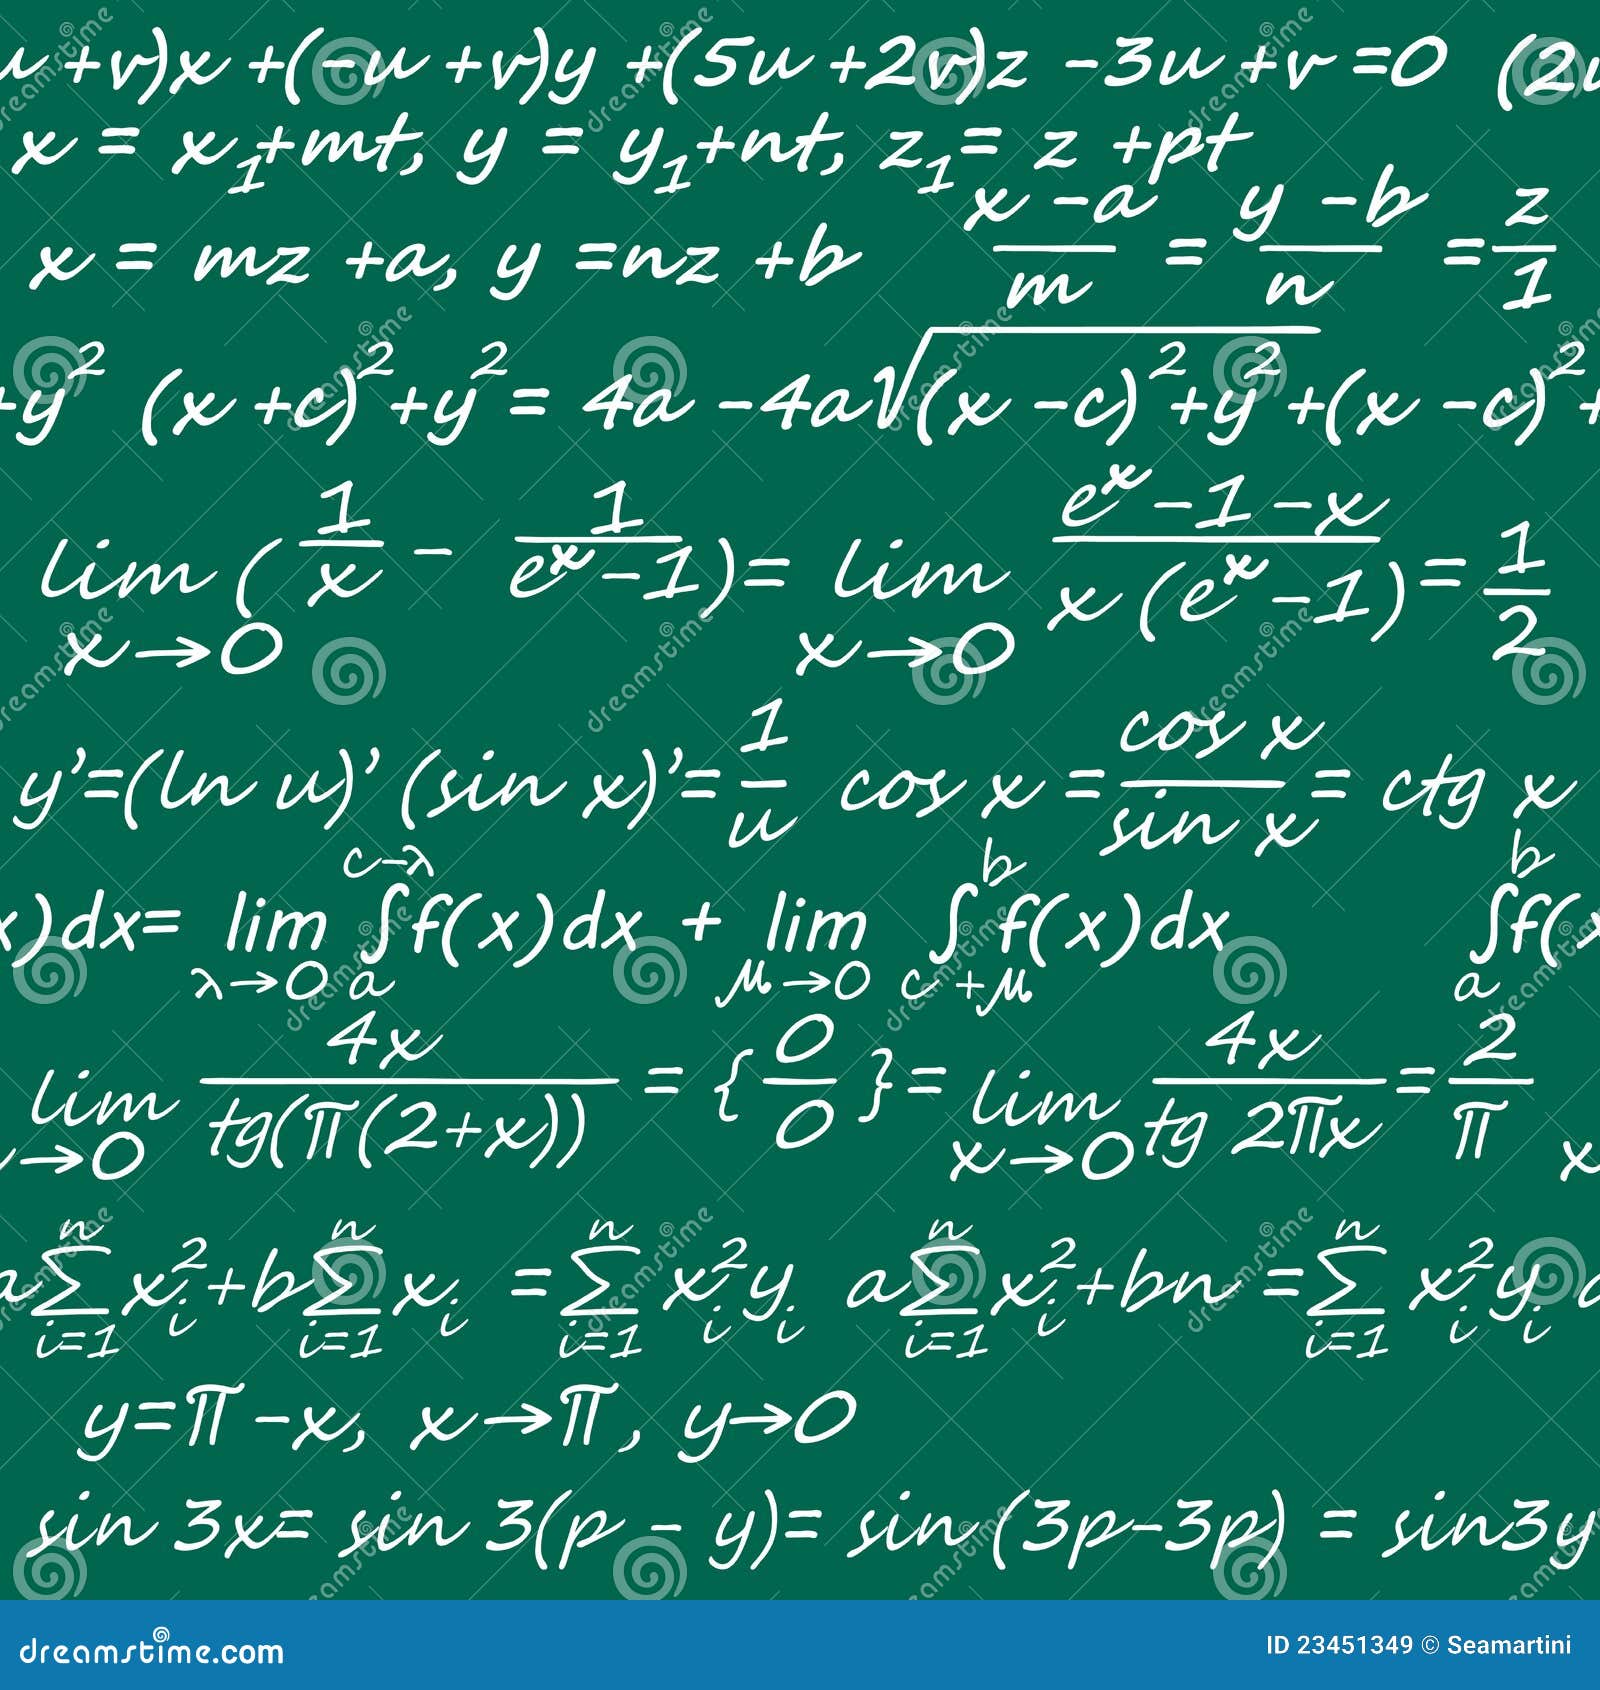 Math Wallpaper Images - Free Download on Freepik